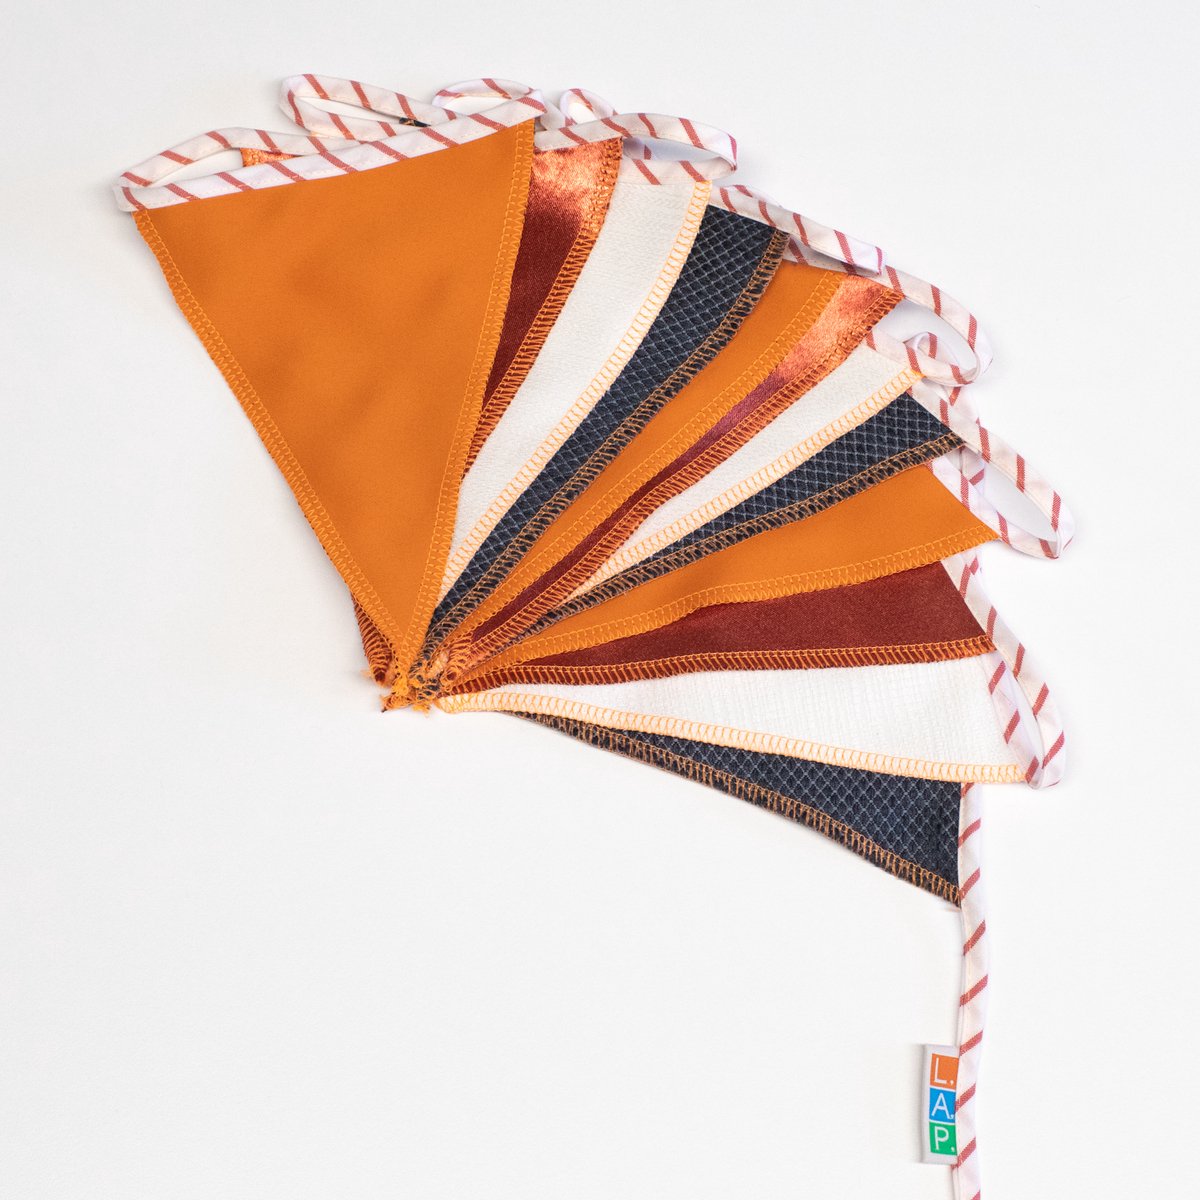 L.A.P. Atelier Vlaggenlijn Hollands Glorie - handgemaakte vlaggenlijn van duurzame stof - oranje rood wit blauw - 550 cm